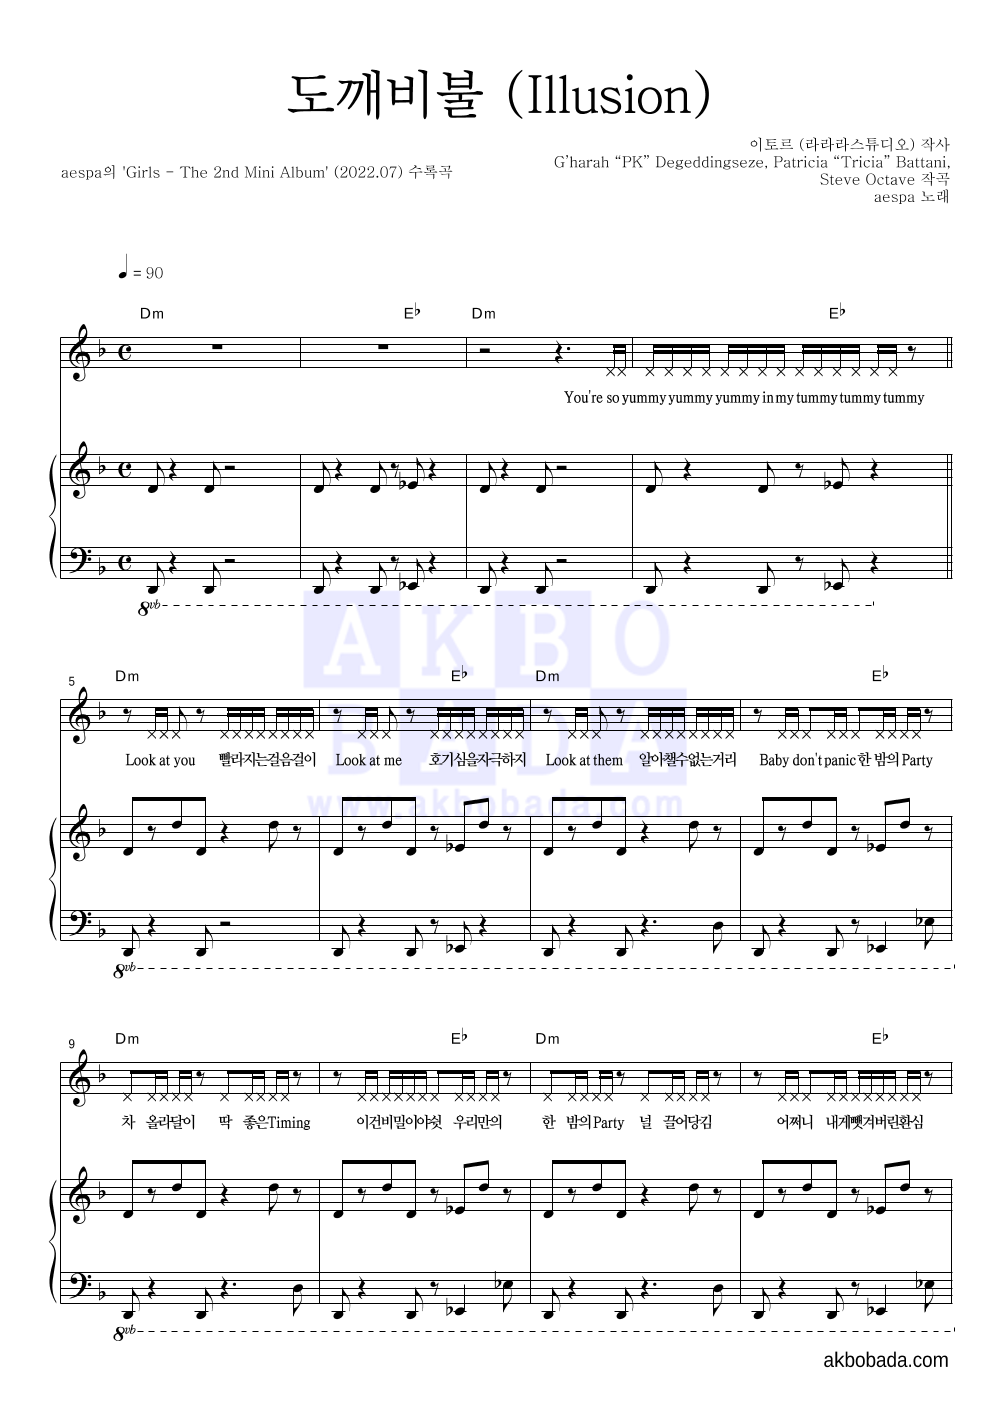 aespa - 도깨비불 (Illusion) 피아노 3단 악보 